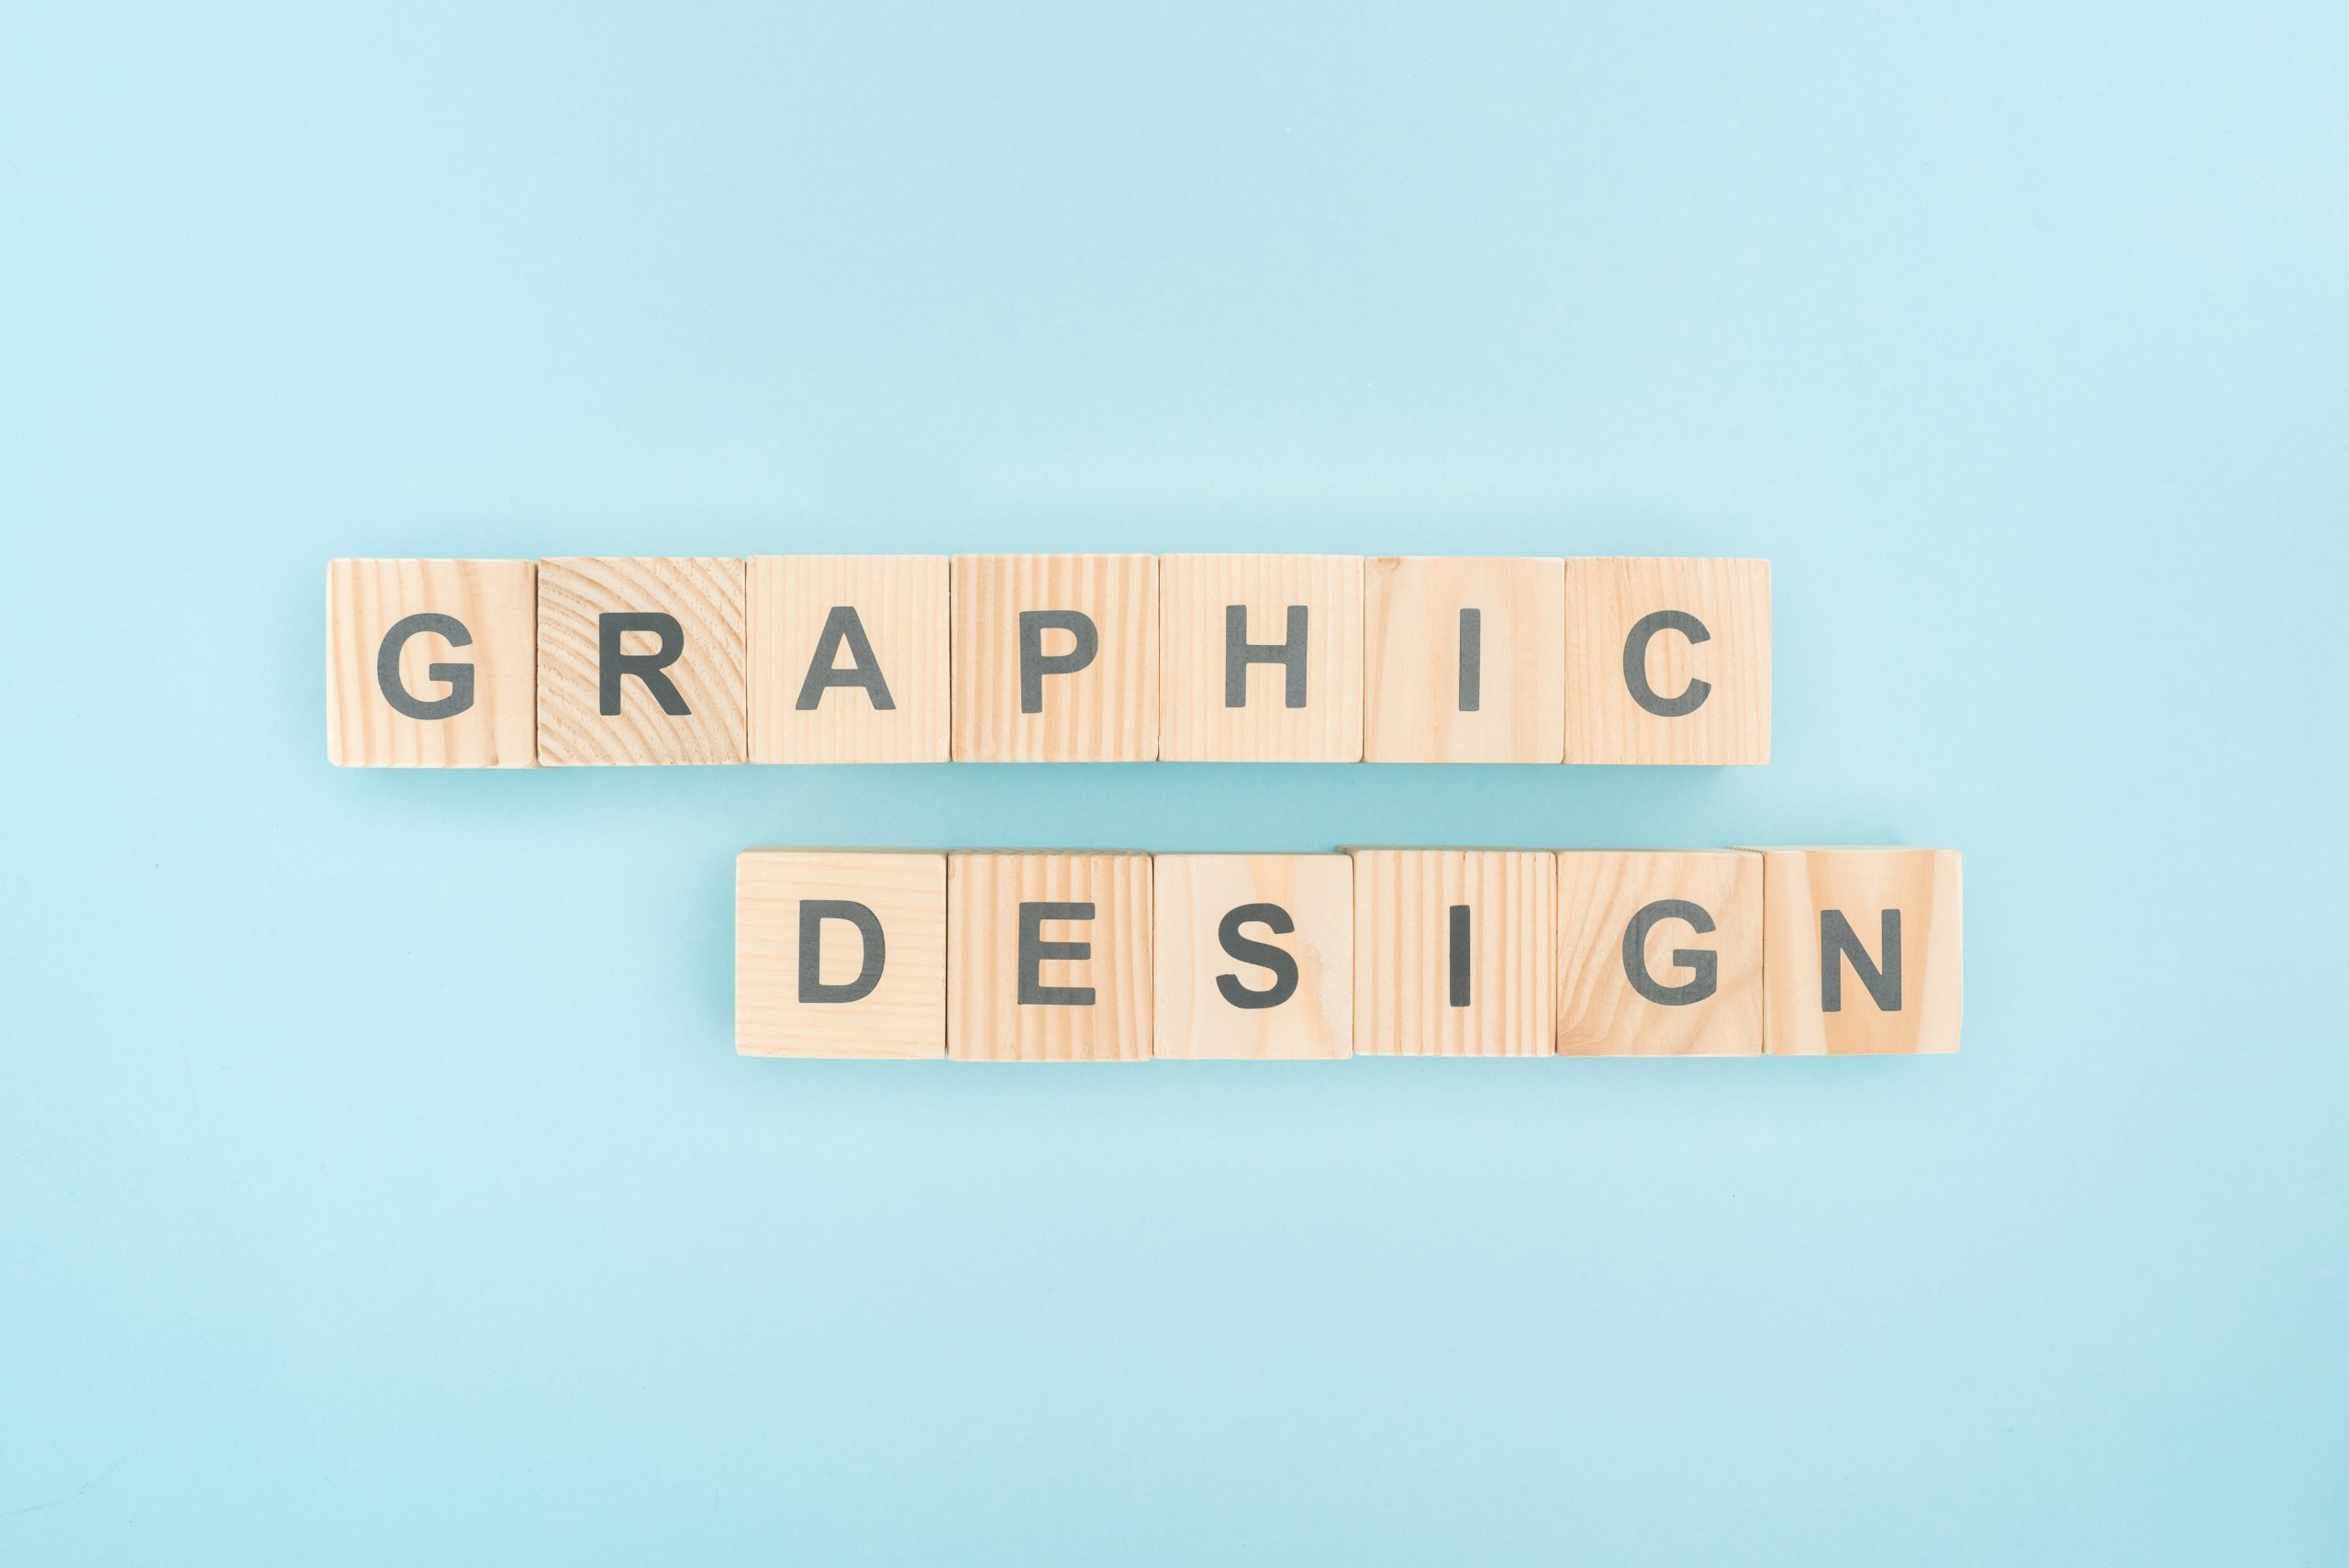 grafikdesign für ärzte - grafikagentur wien